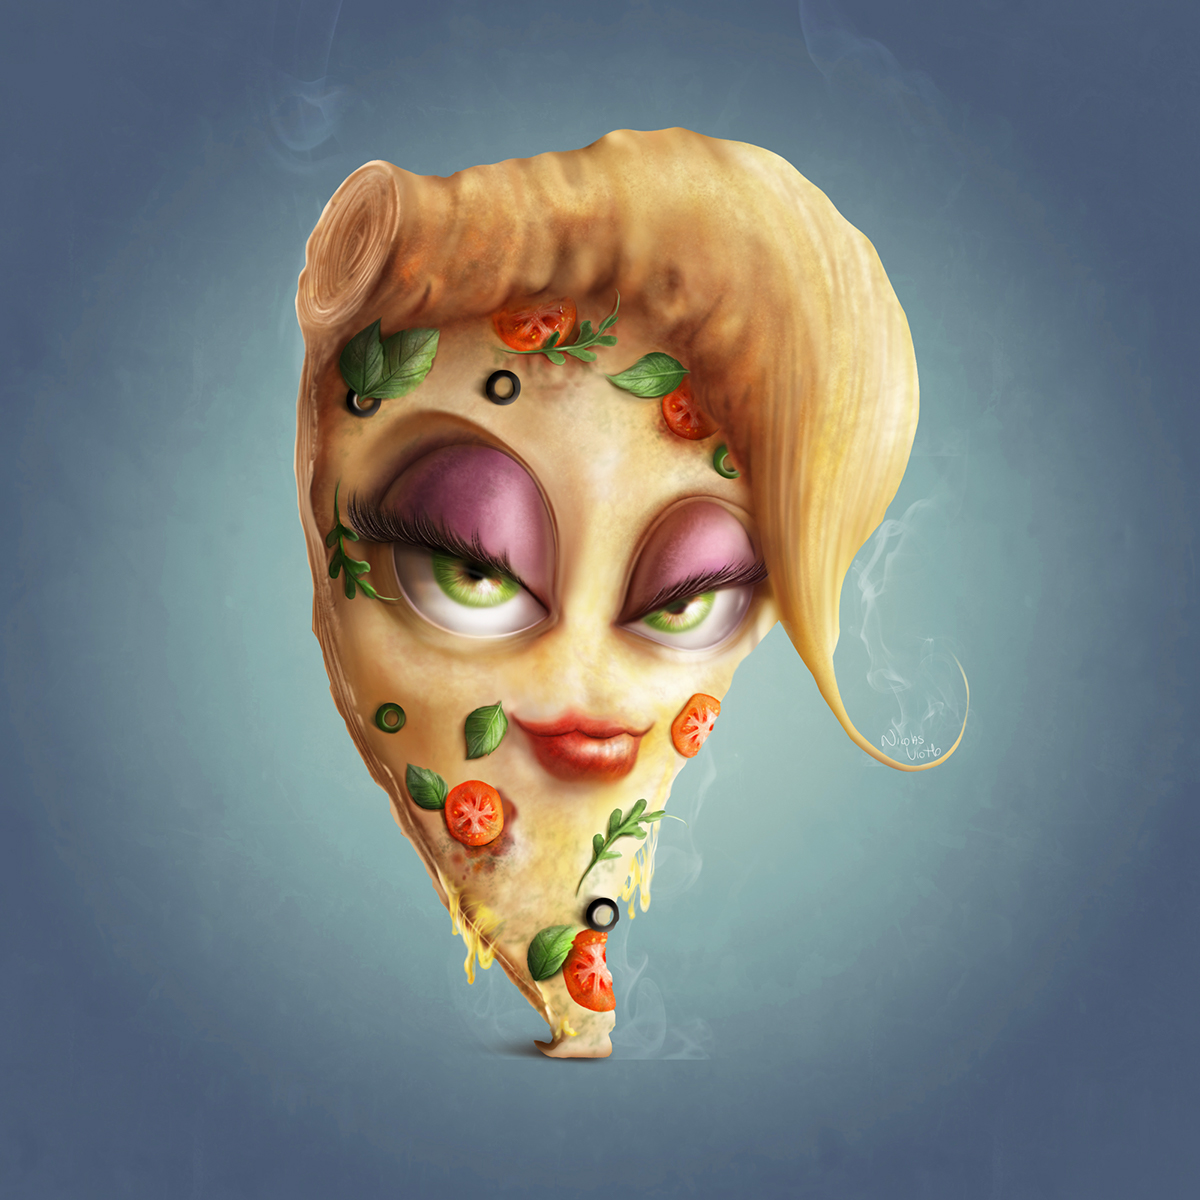 Pizza Character personagem mascote design campaign nicoals viotto digital paitn pintura digital Character design 